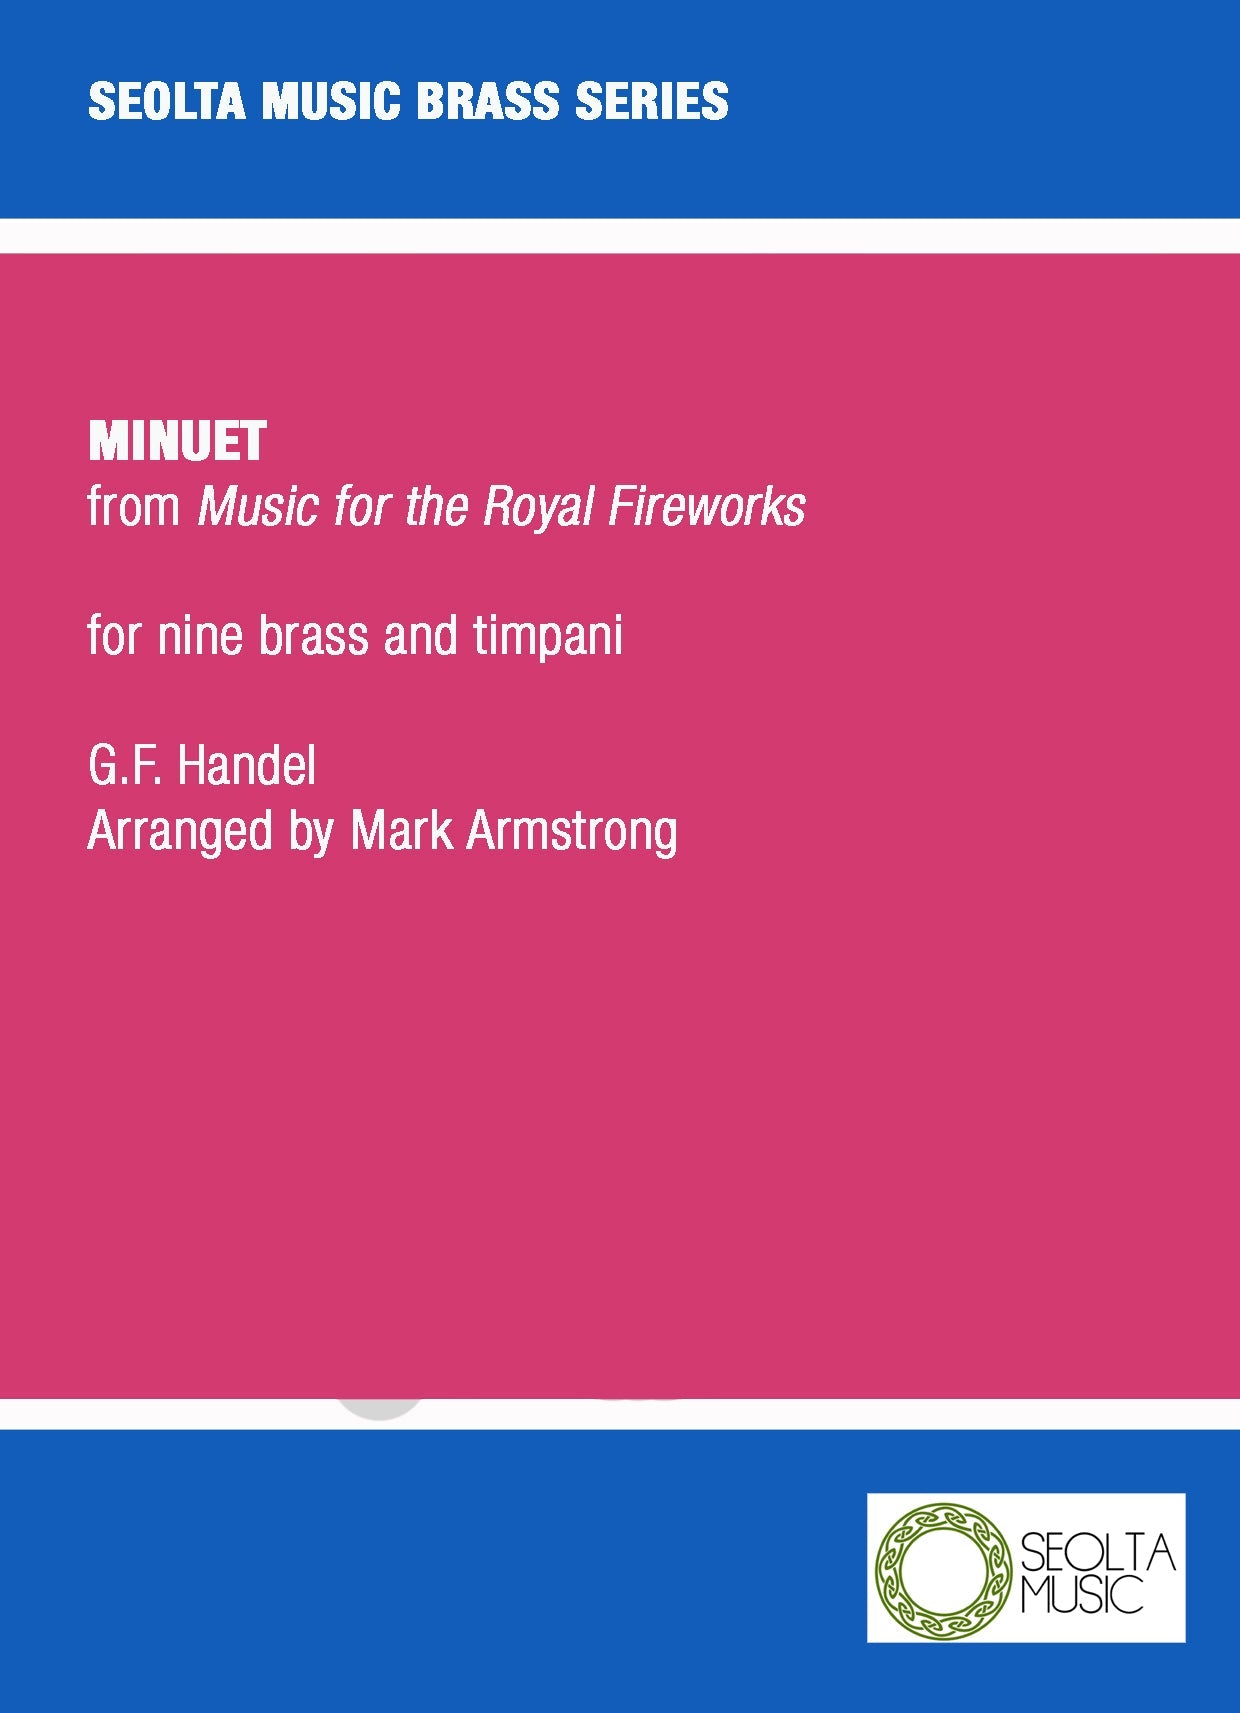 minuet-from-fireworks-music-brass-handel-sheet-music